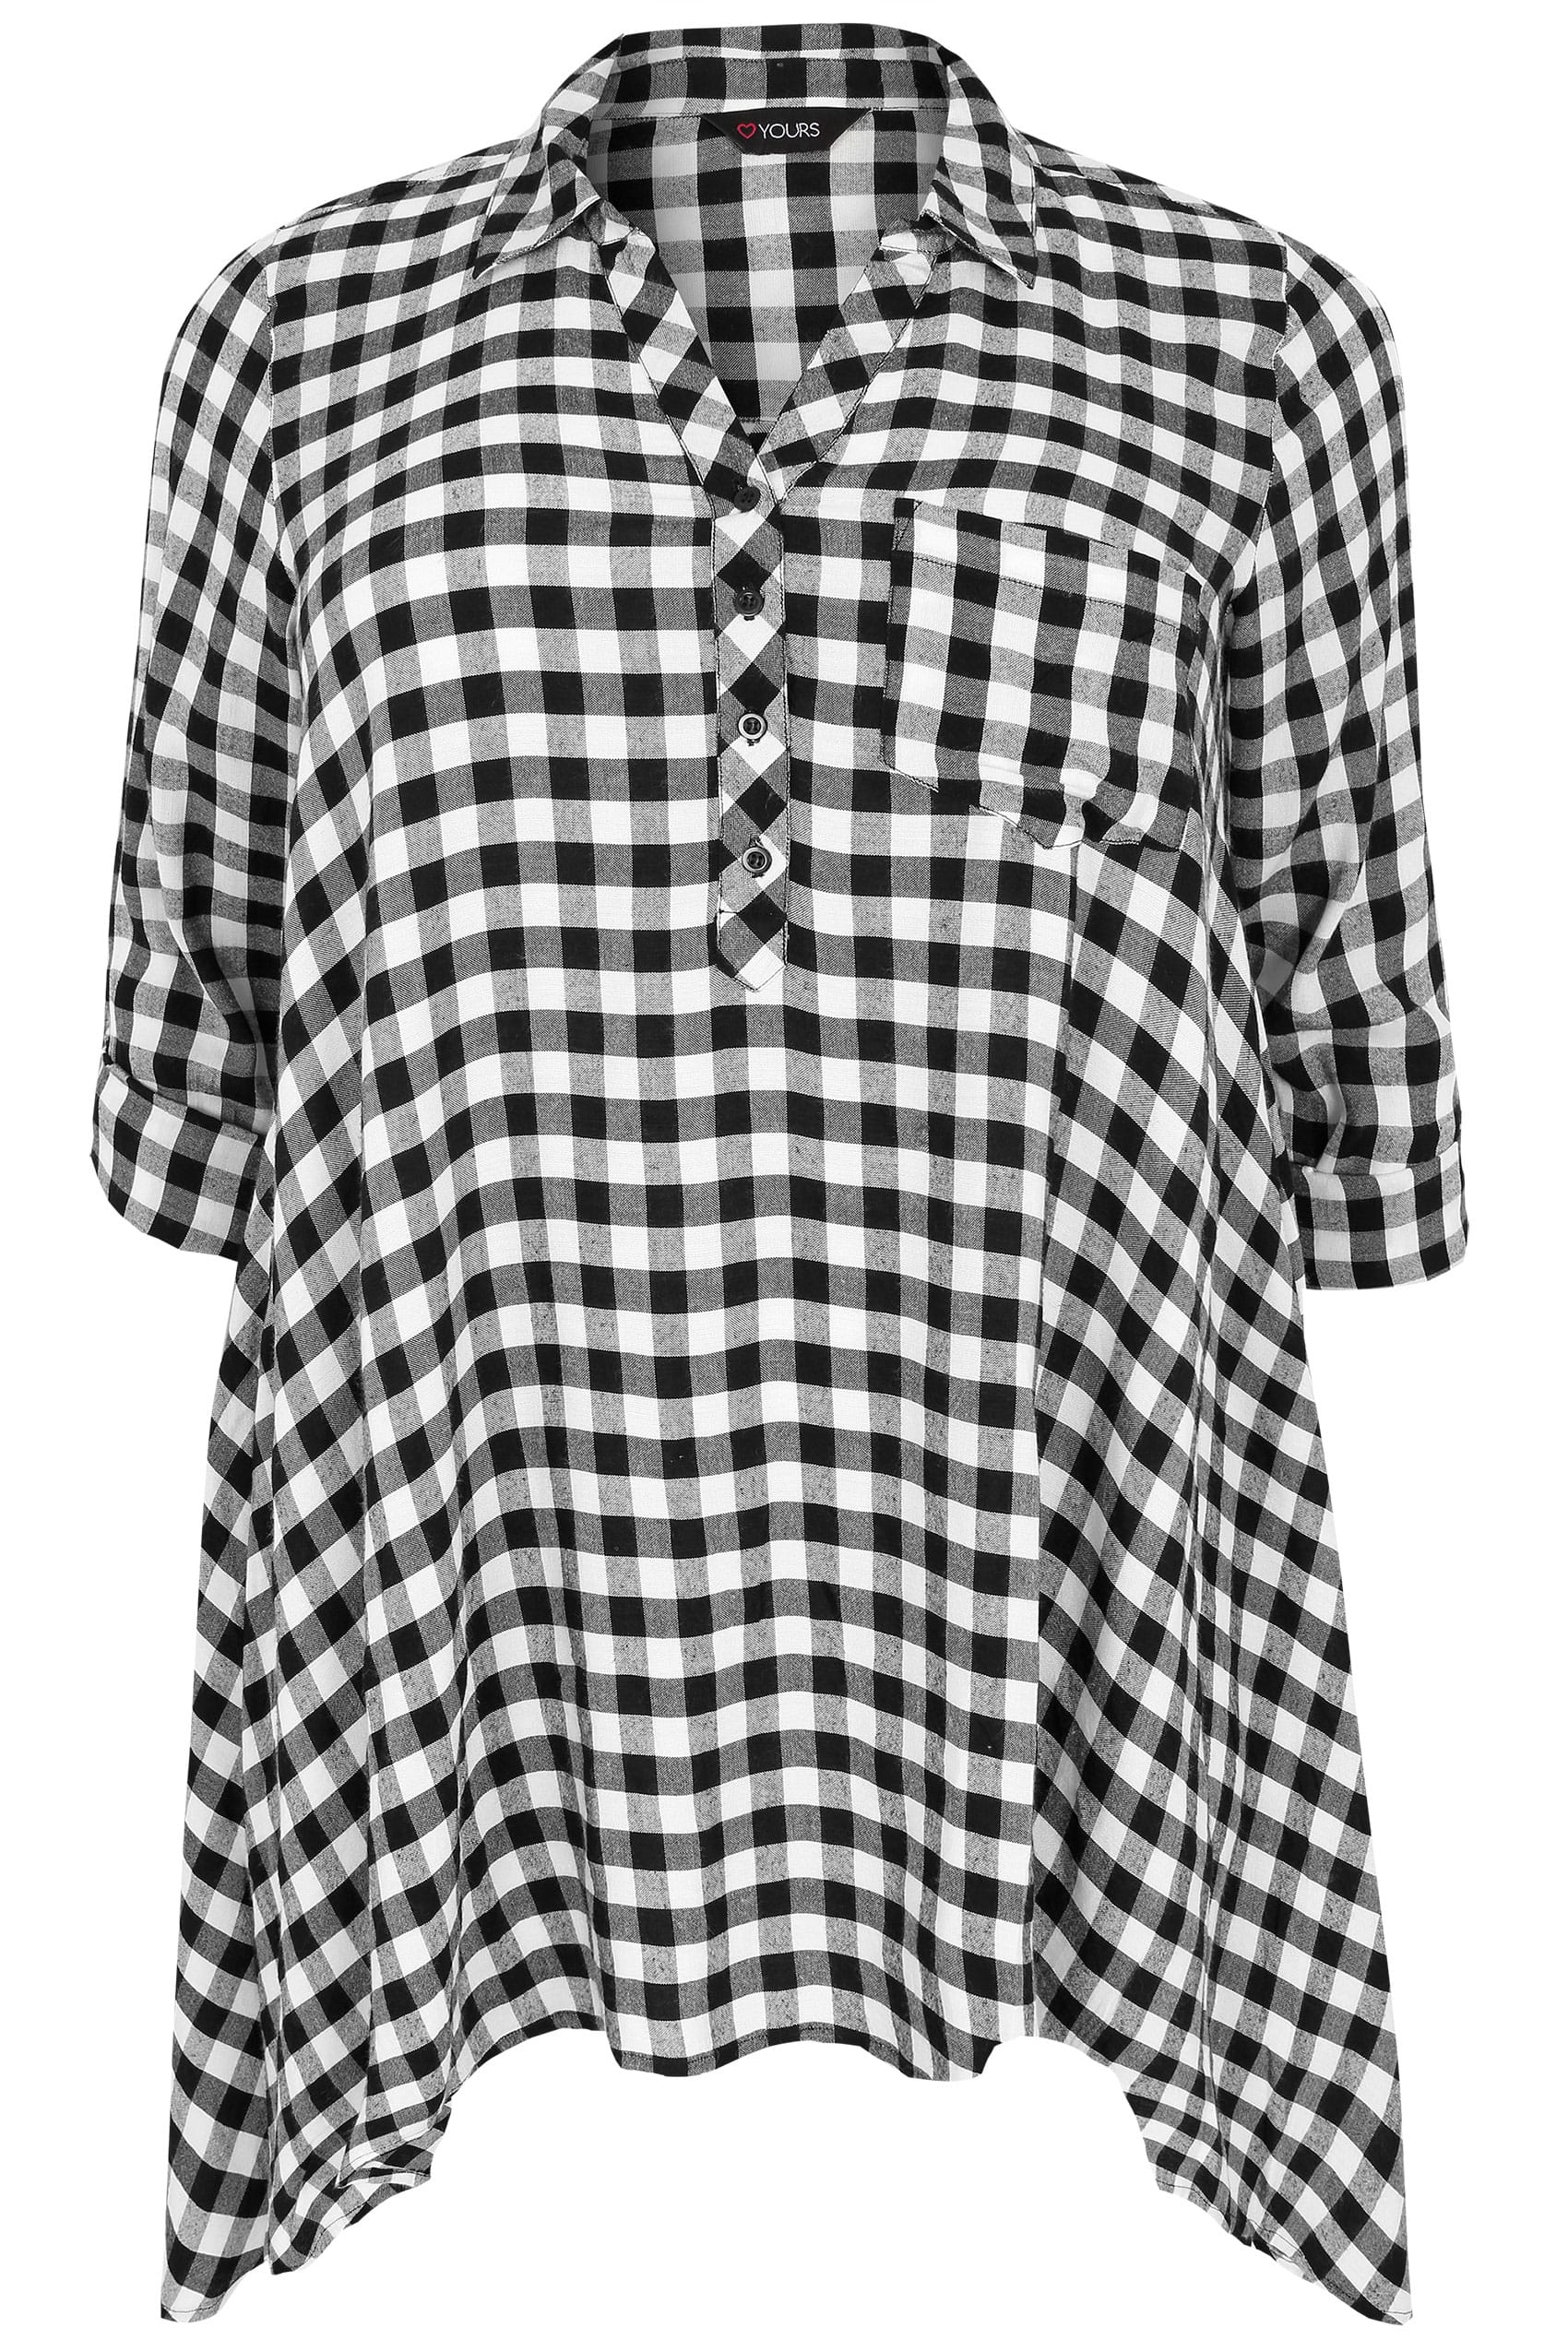 Black & White Asymmetric Checked Shirt, Plus size 16 to 36